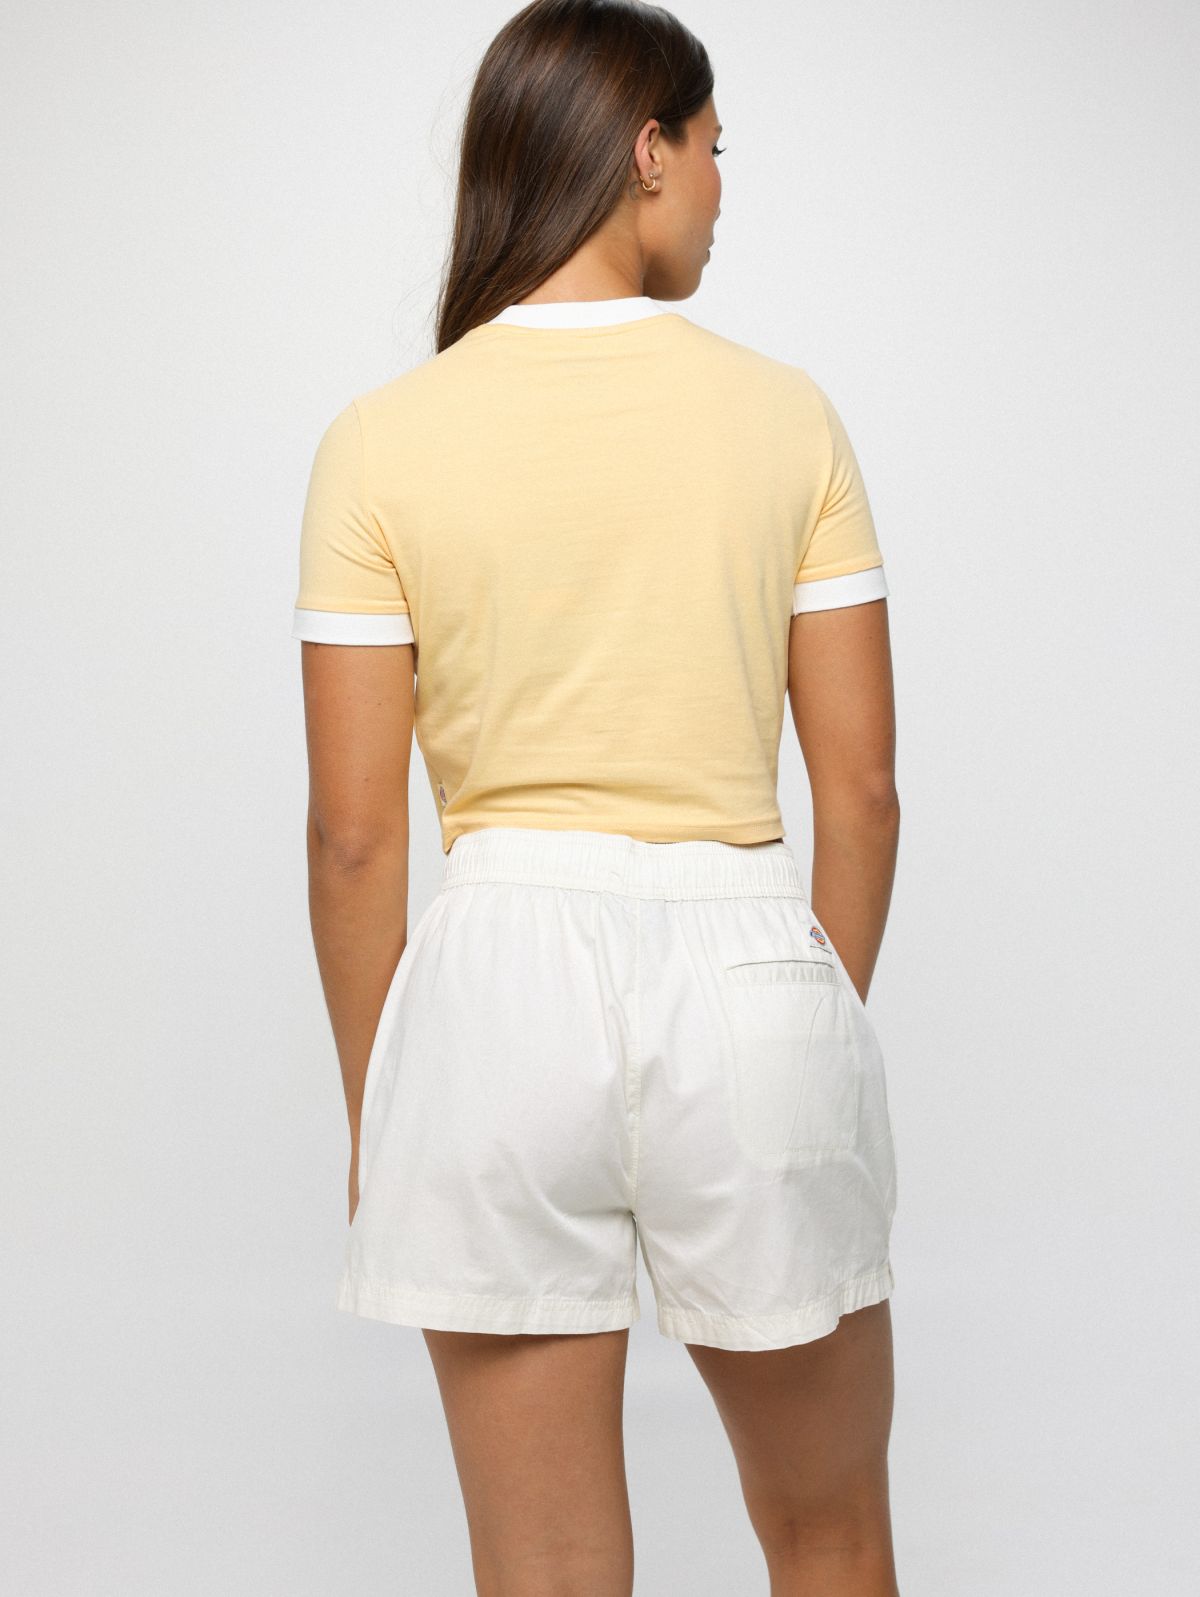  מכנסיים קצרים עם תווית לוגו של DICKIES